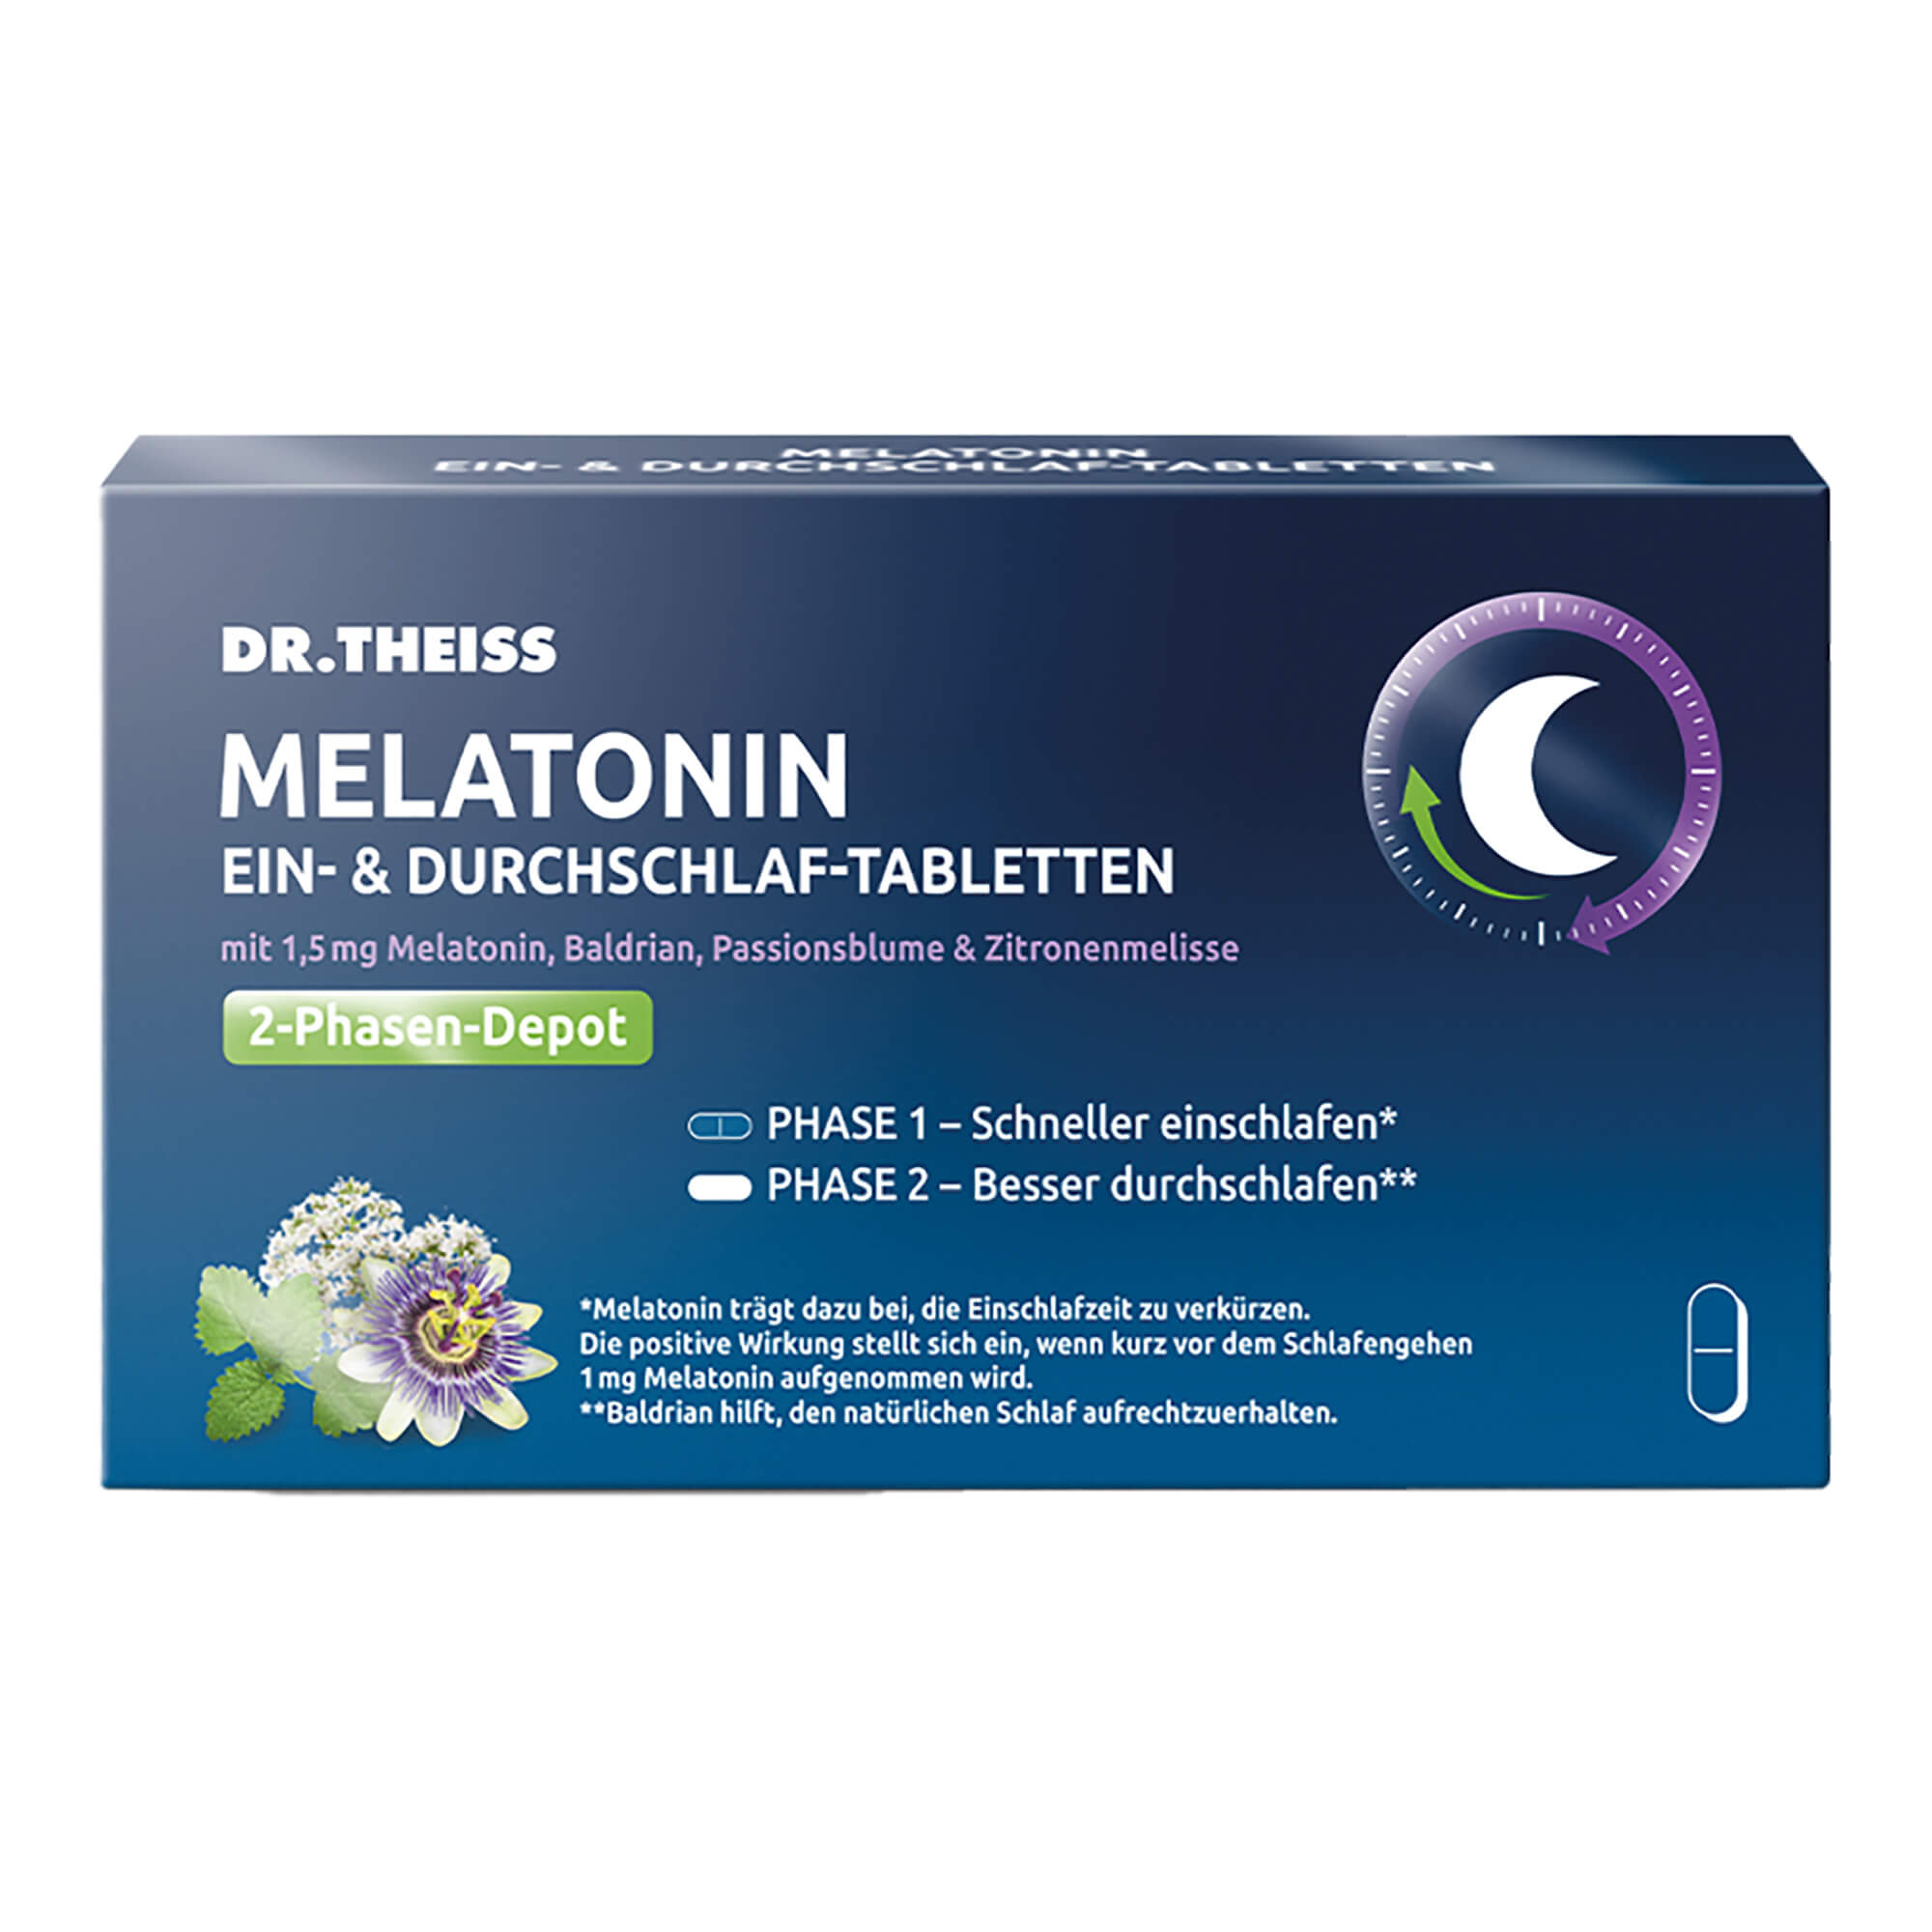 Nahrungsergänzungsmittel mit Melatonin, Baldrian, Passionsblume & Zitronenmelisse. Als 2-Phasen-Depot-Tabletten. Für Erwachsene.